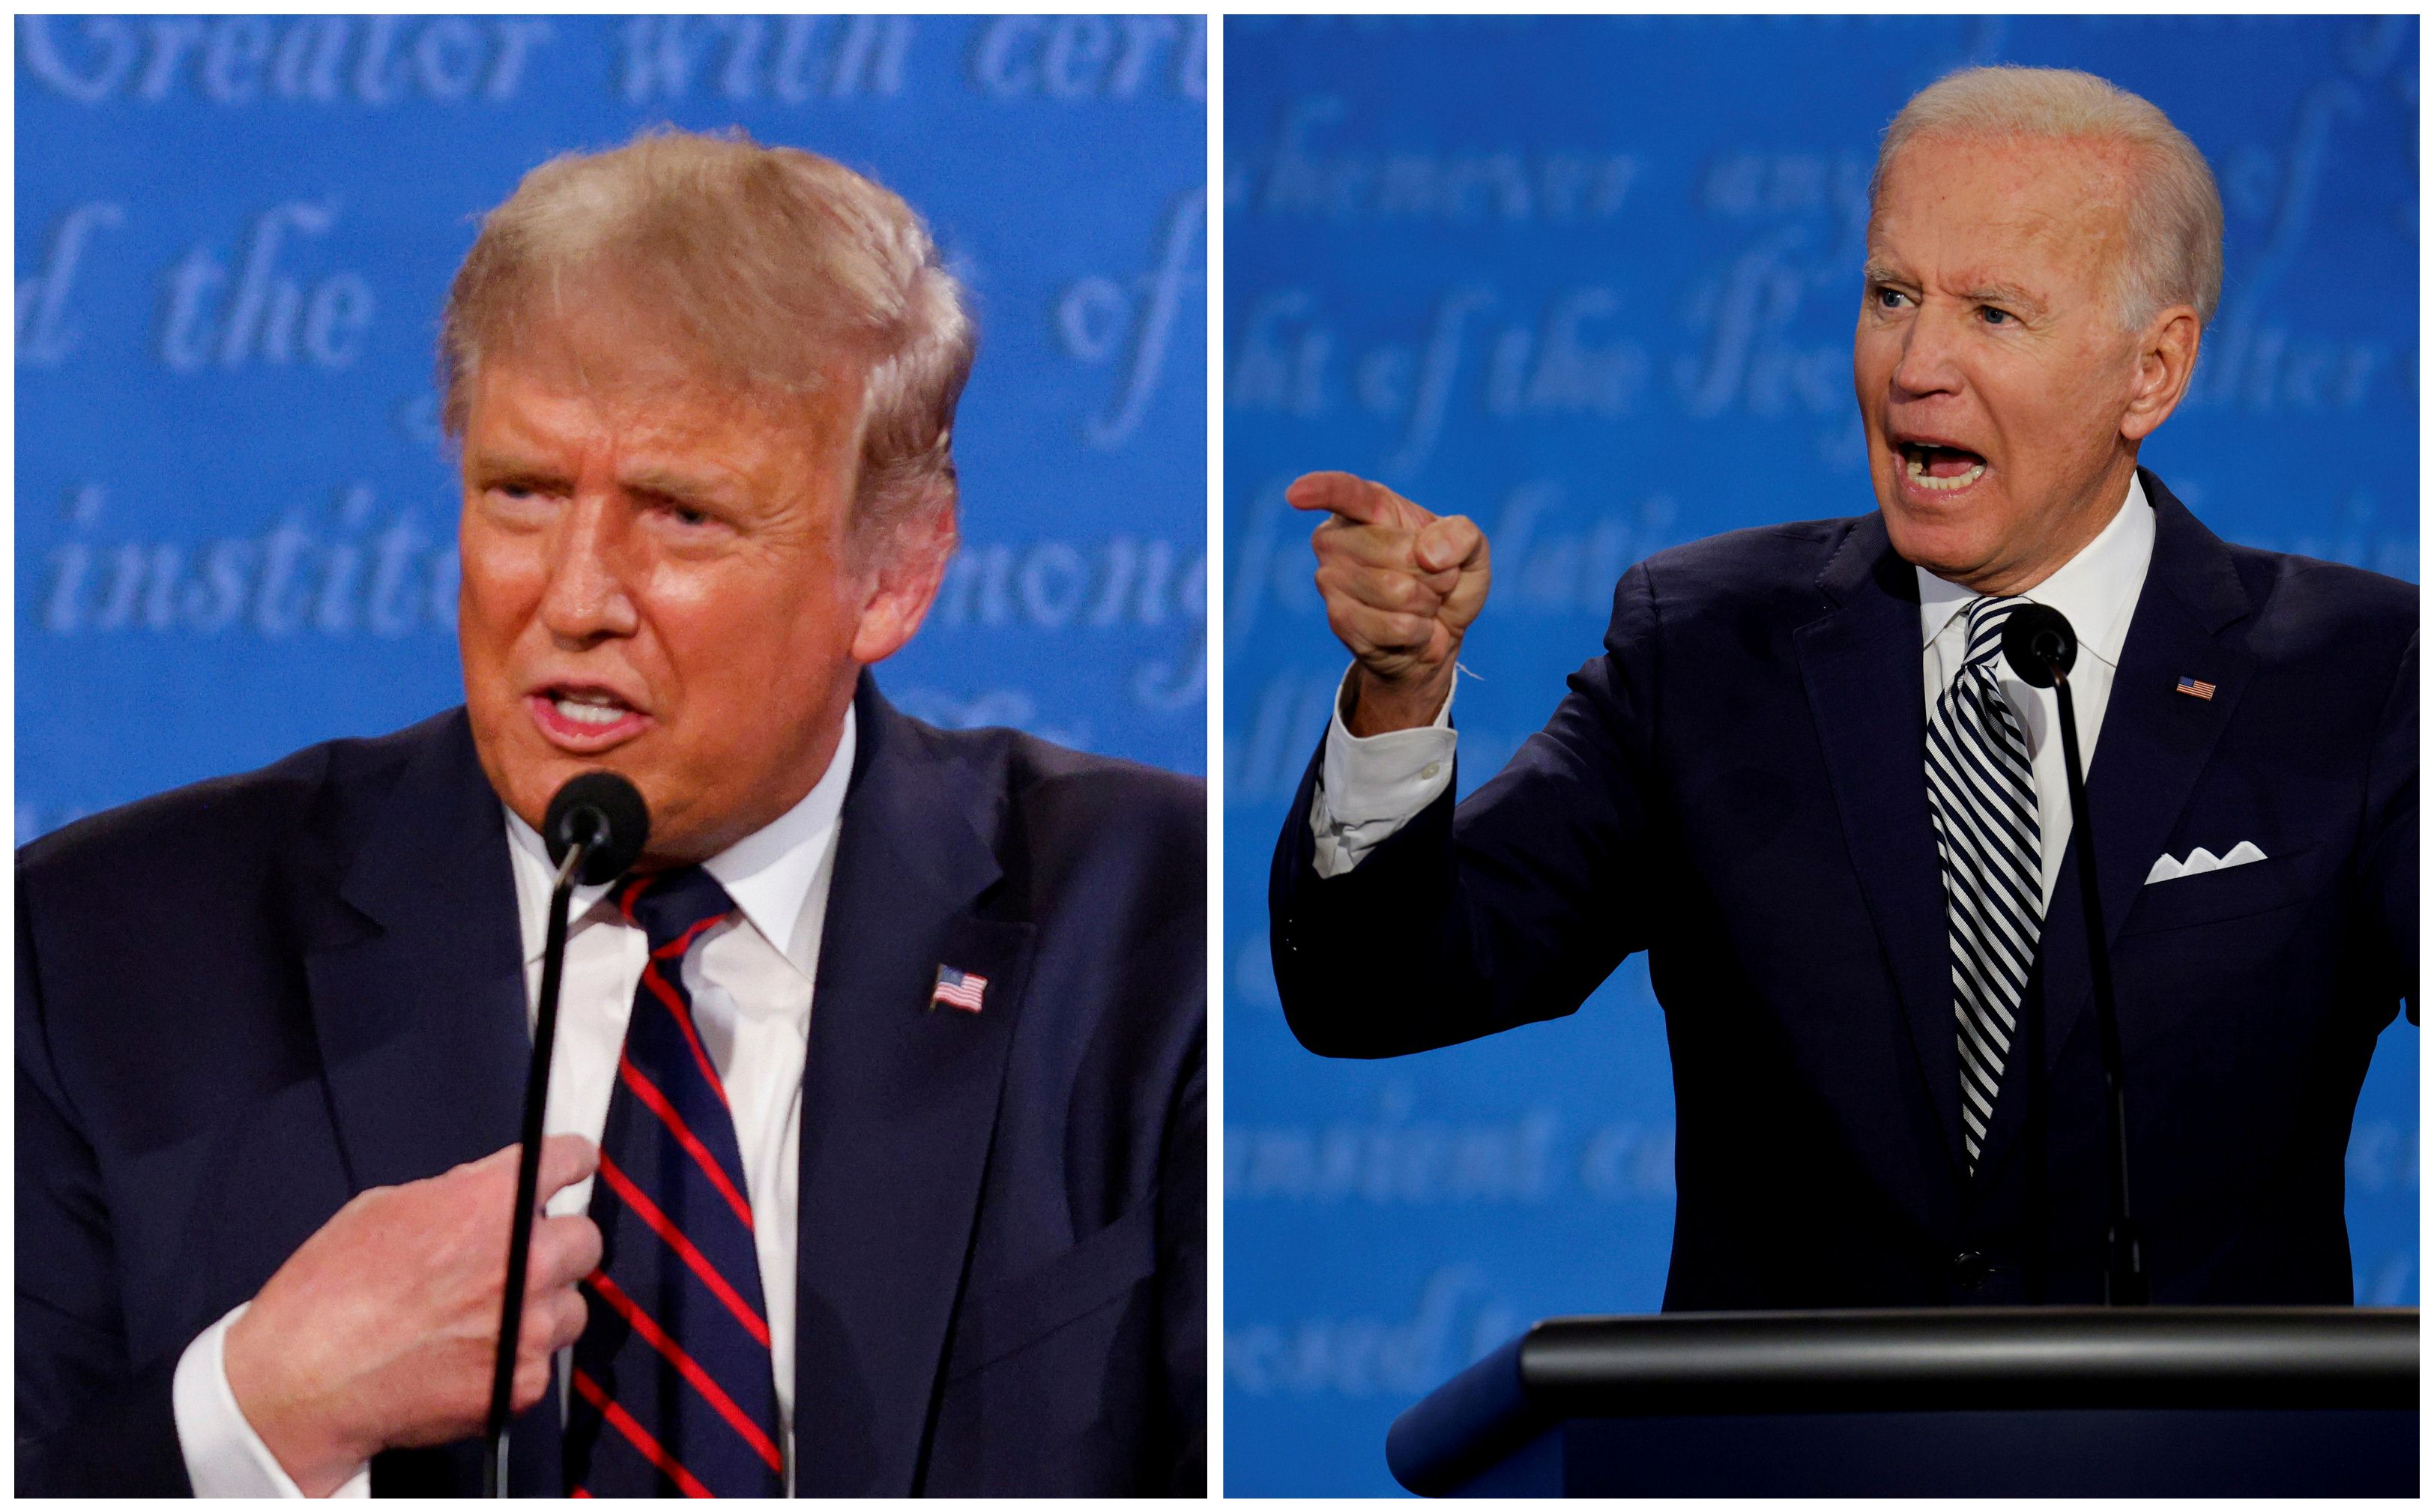 Donald Trump ja Joe Biden olivat ärhäkällä tuulella ensimmäisessä vaaliväittelyssä.